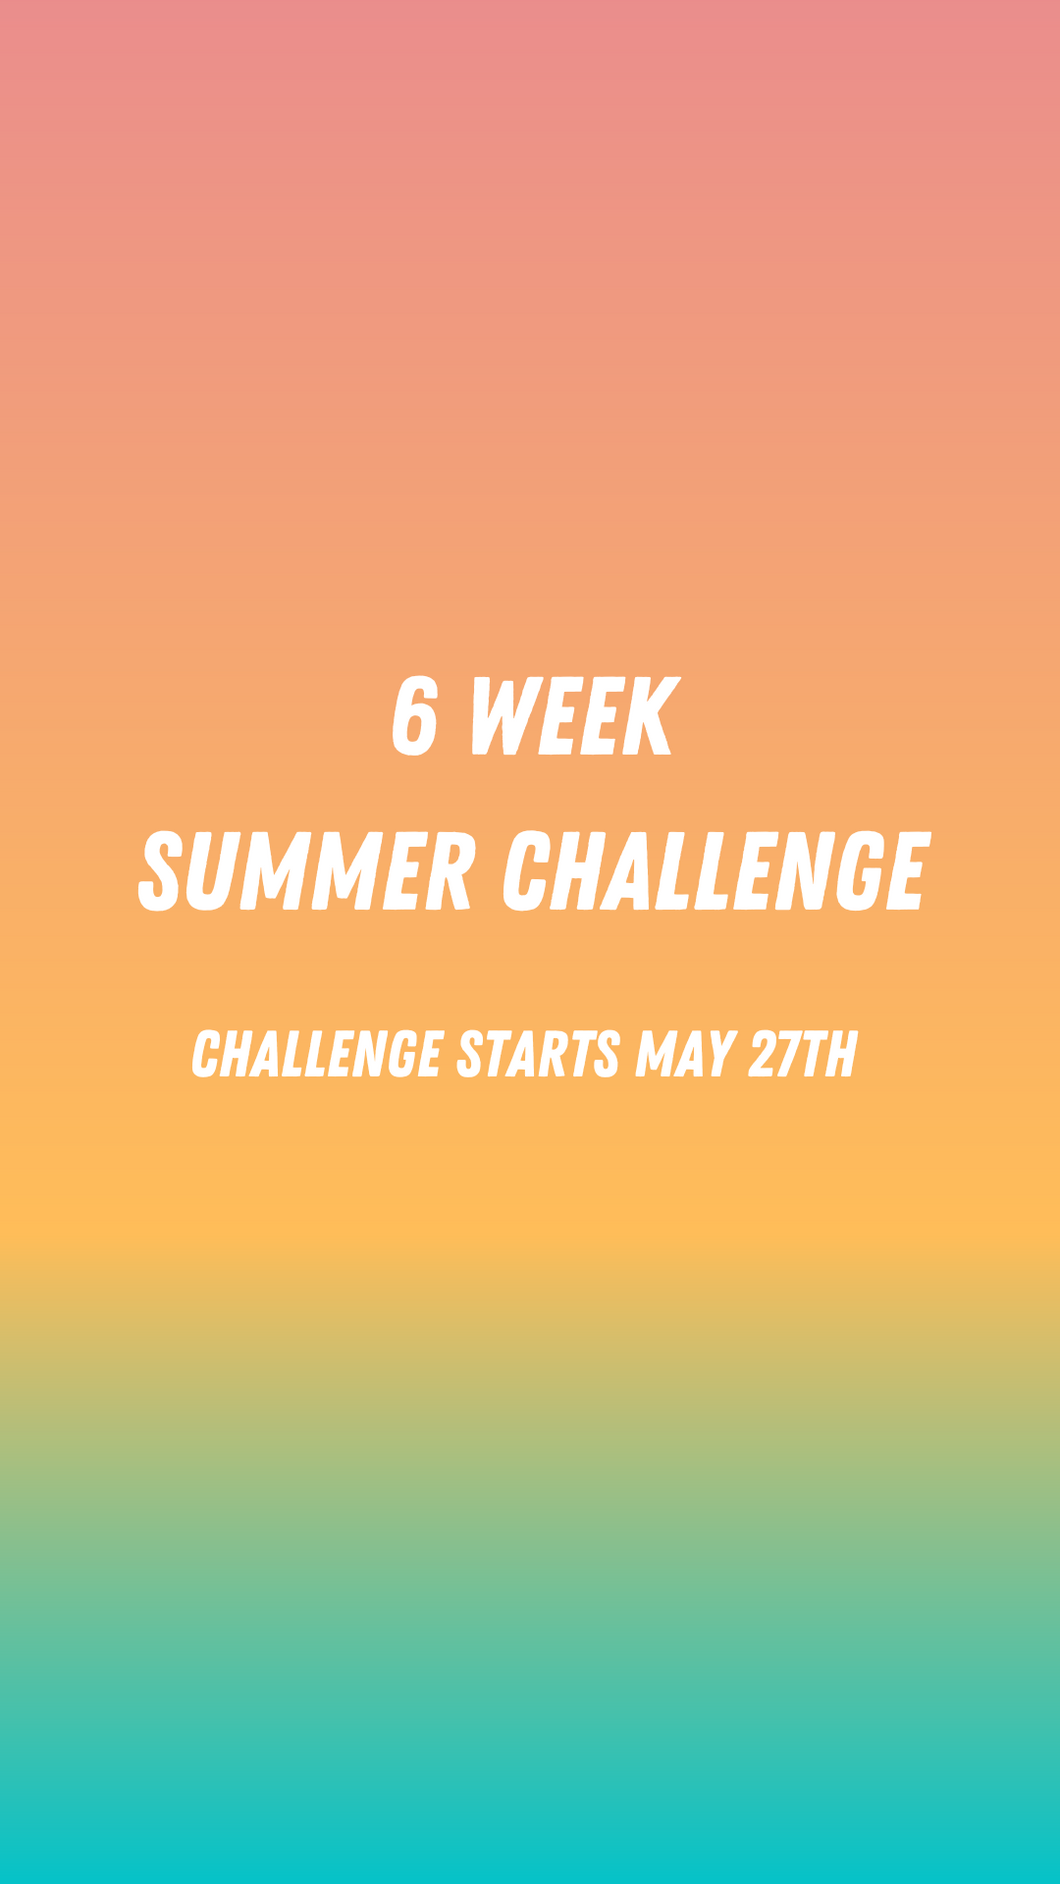 6 WEEK SUMMER CHALLENGE